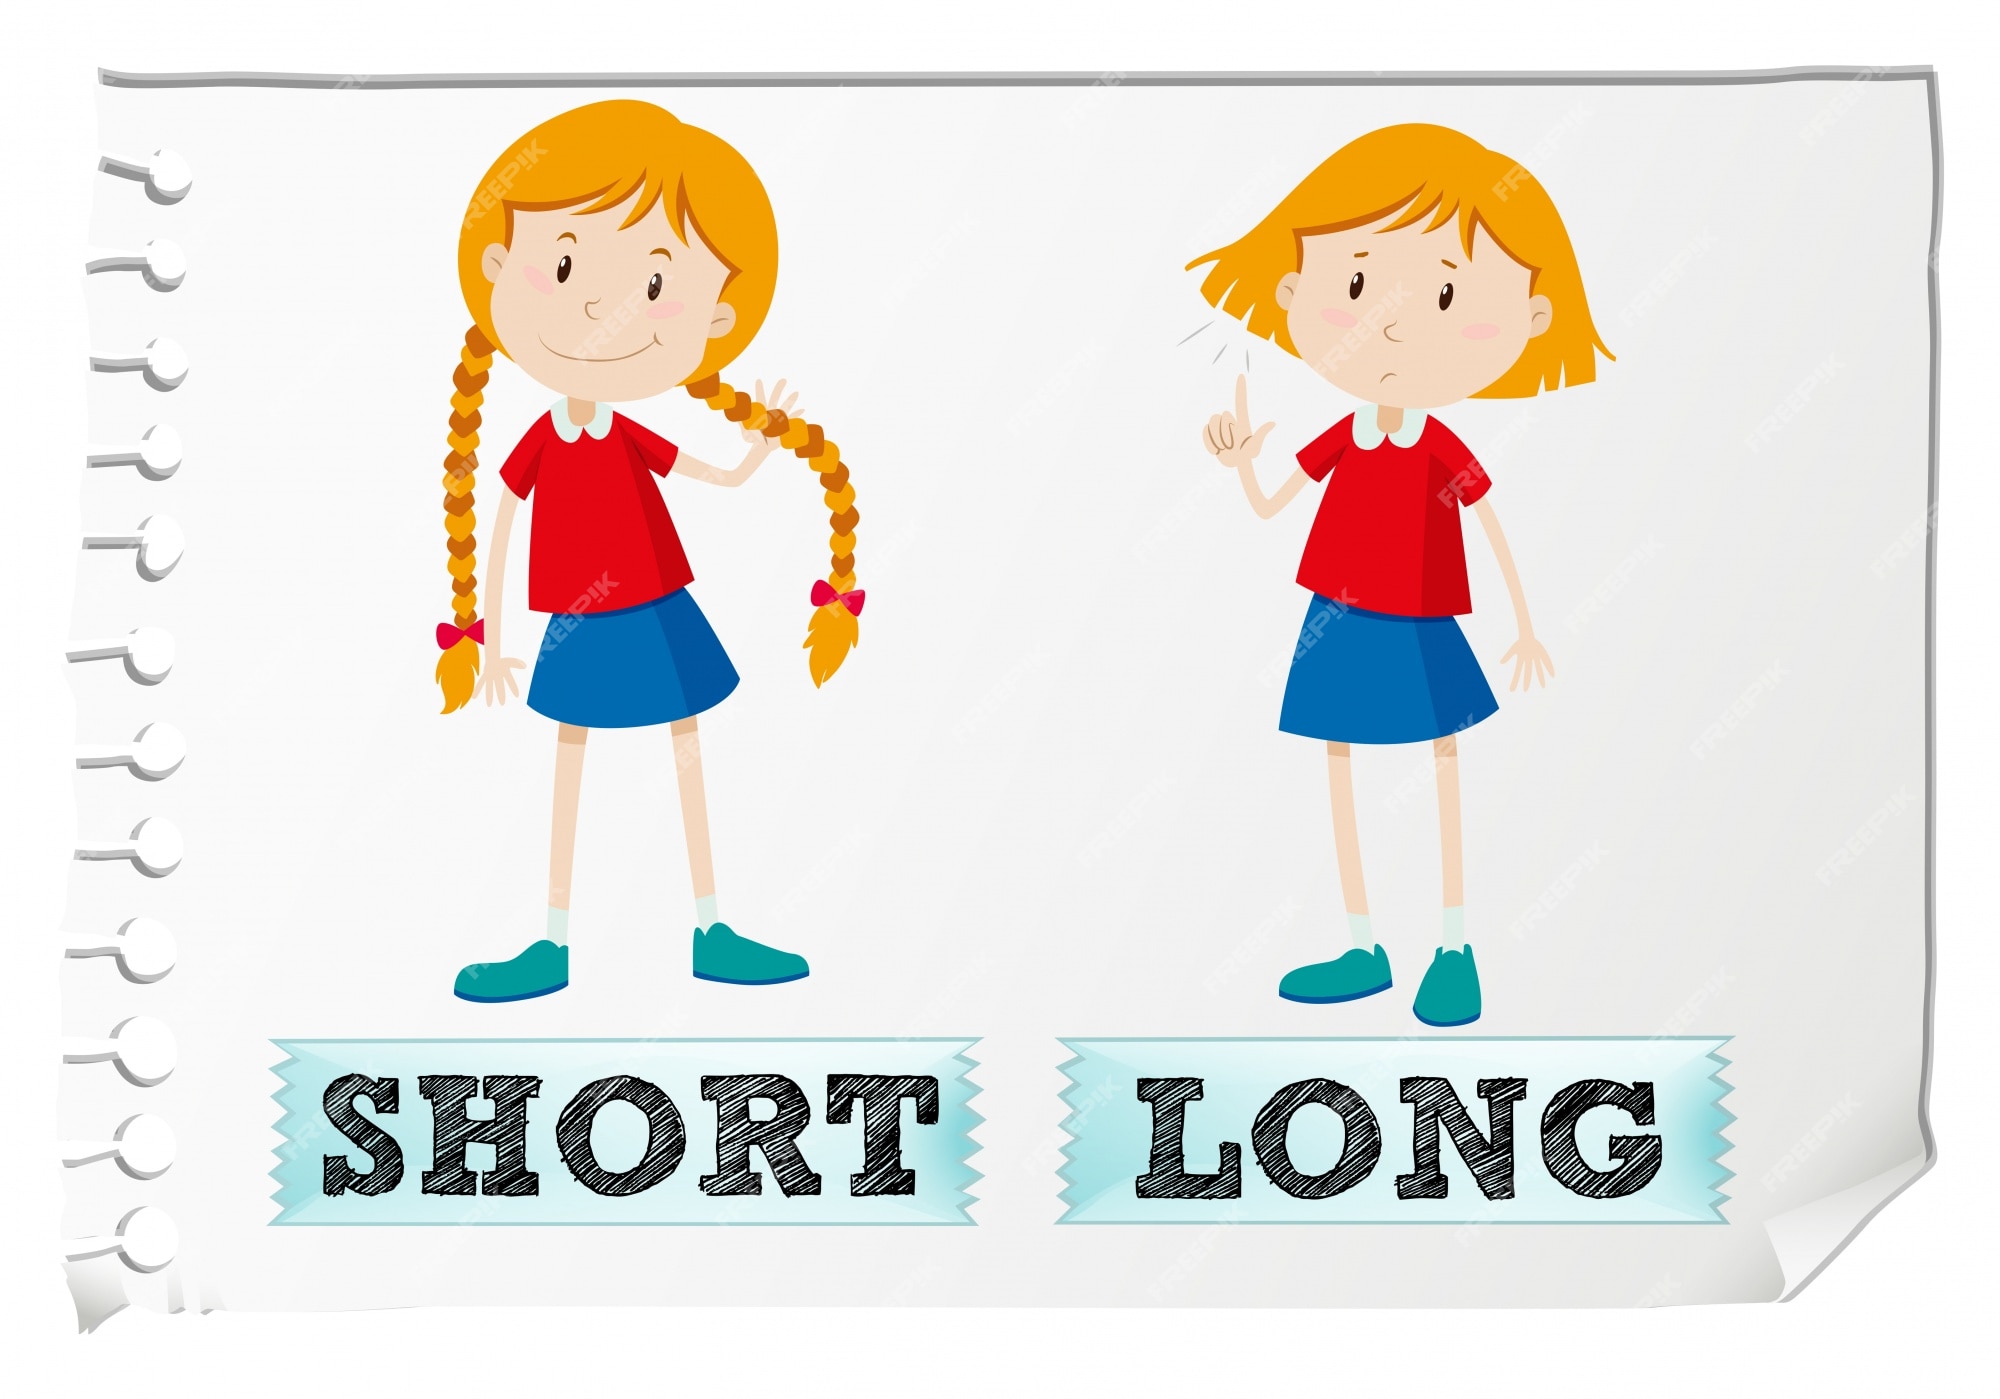 Opposites short. Long short для детей. Длинный короткий на английском. Карточки long short. Long short картинка для детей.